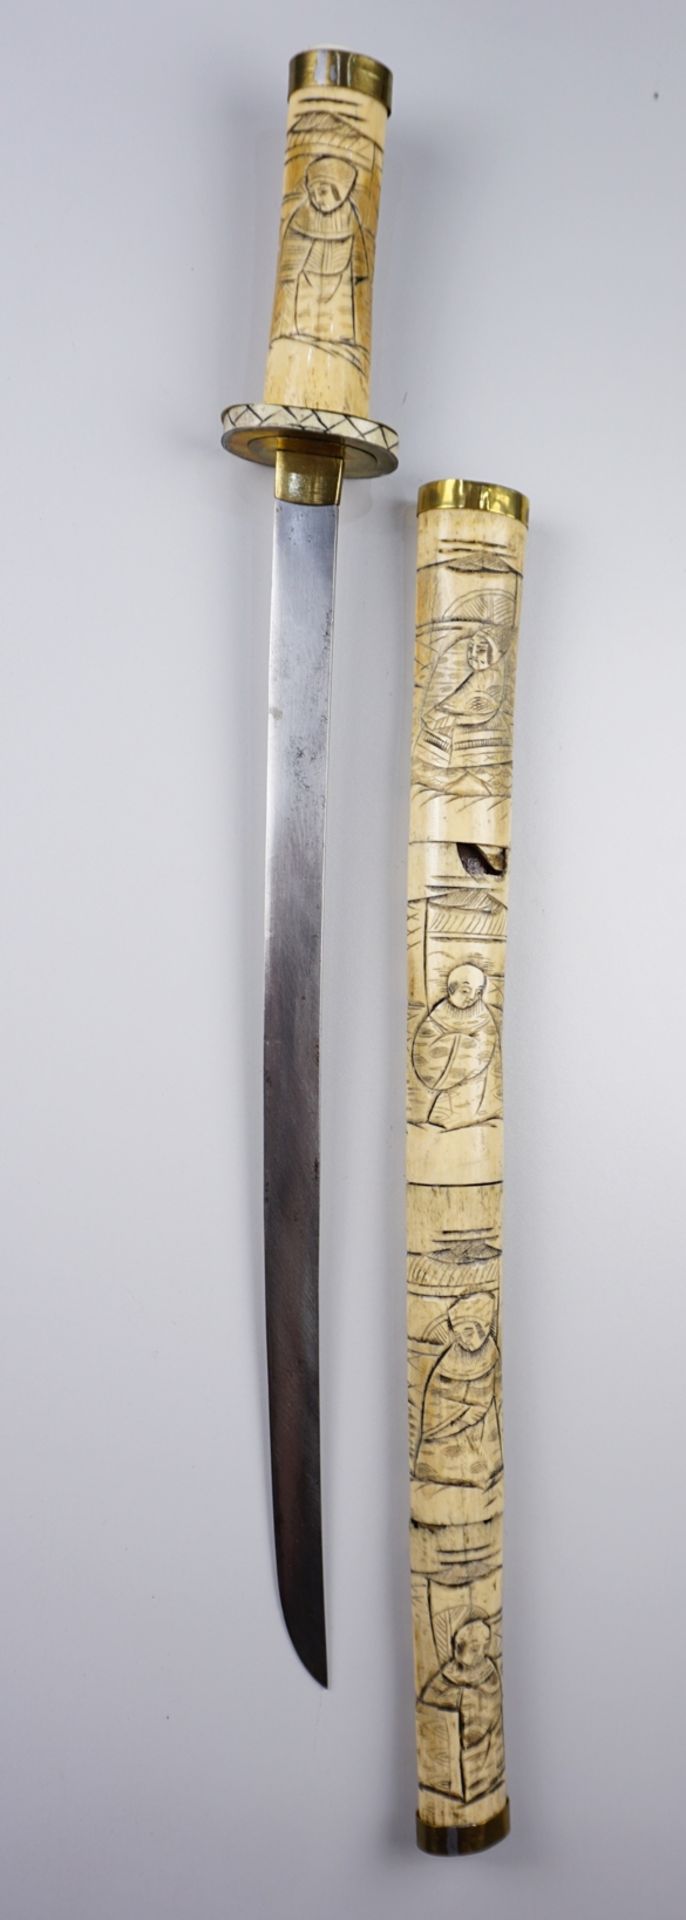 Nachahmung eines Samuraischwerts, mit Knochenschnitzereien